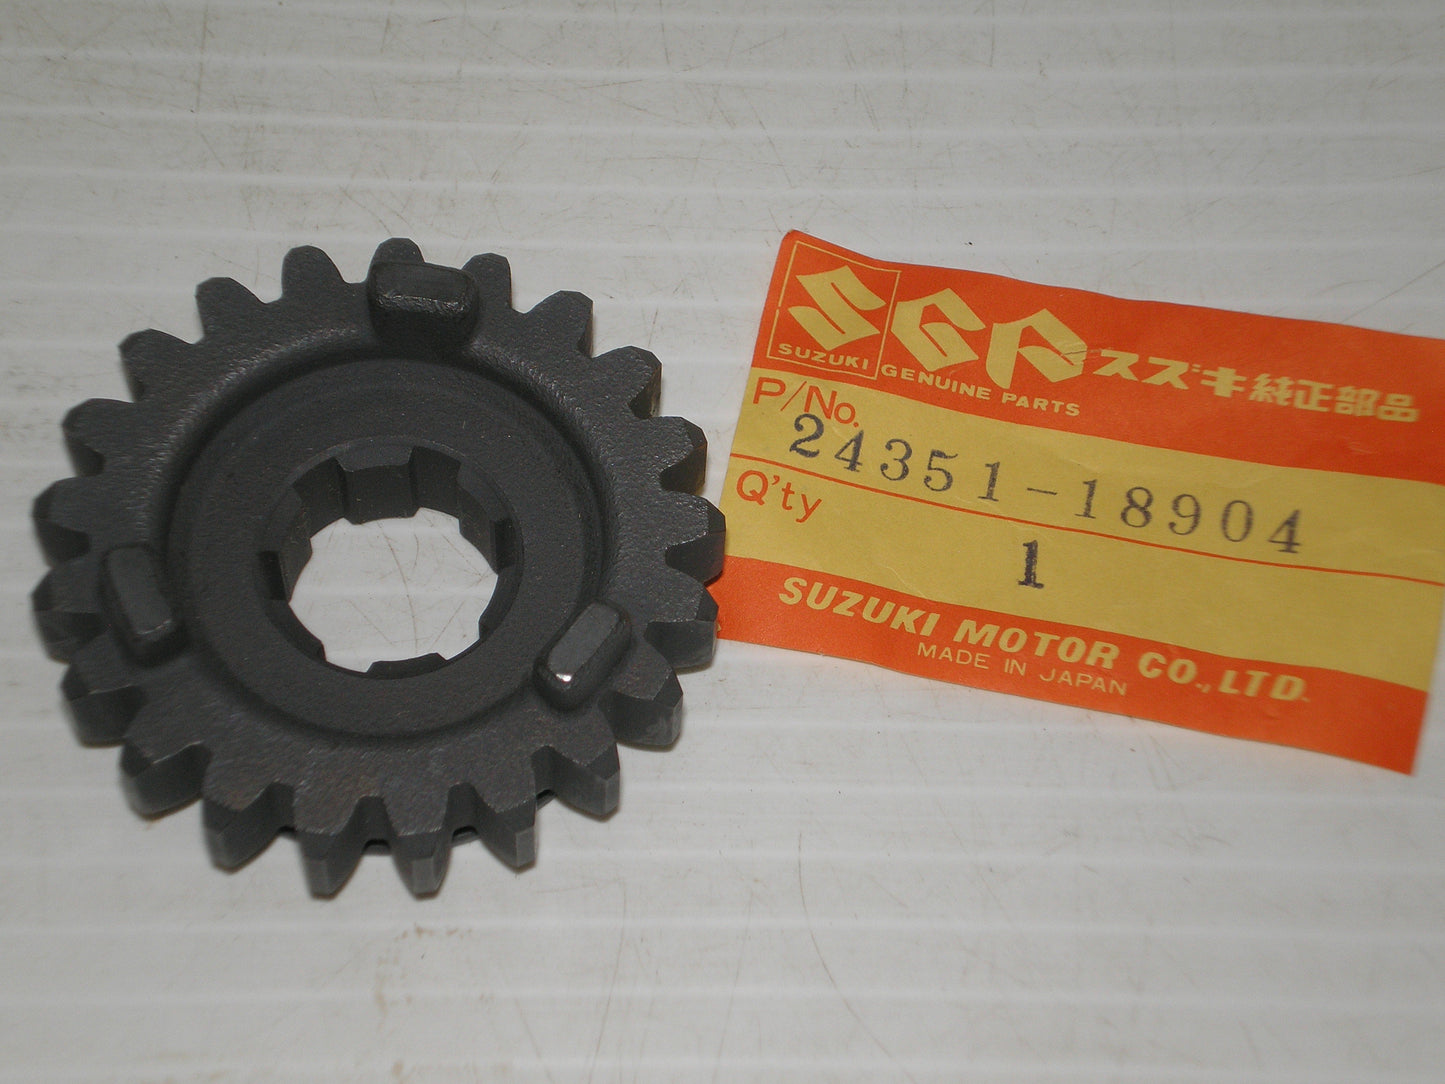 SUZUKI ALT125 LT125 Transmission Fifth Driven Gear 24351-18904